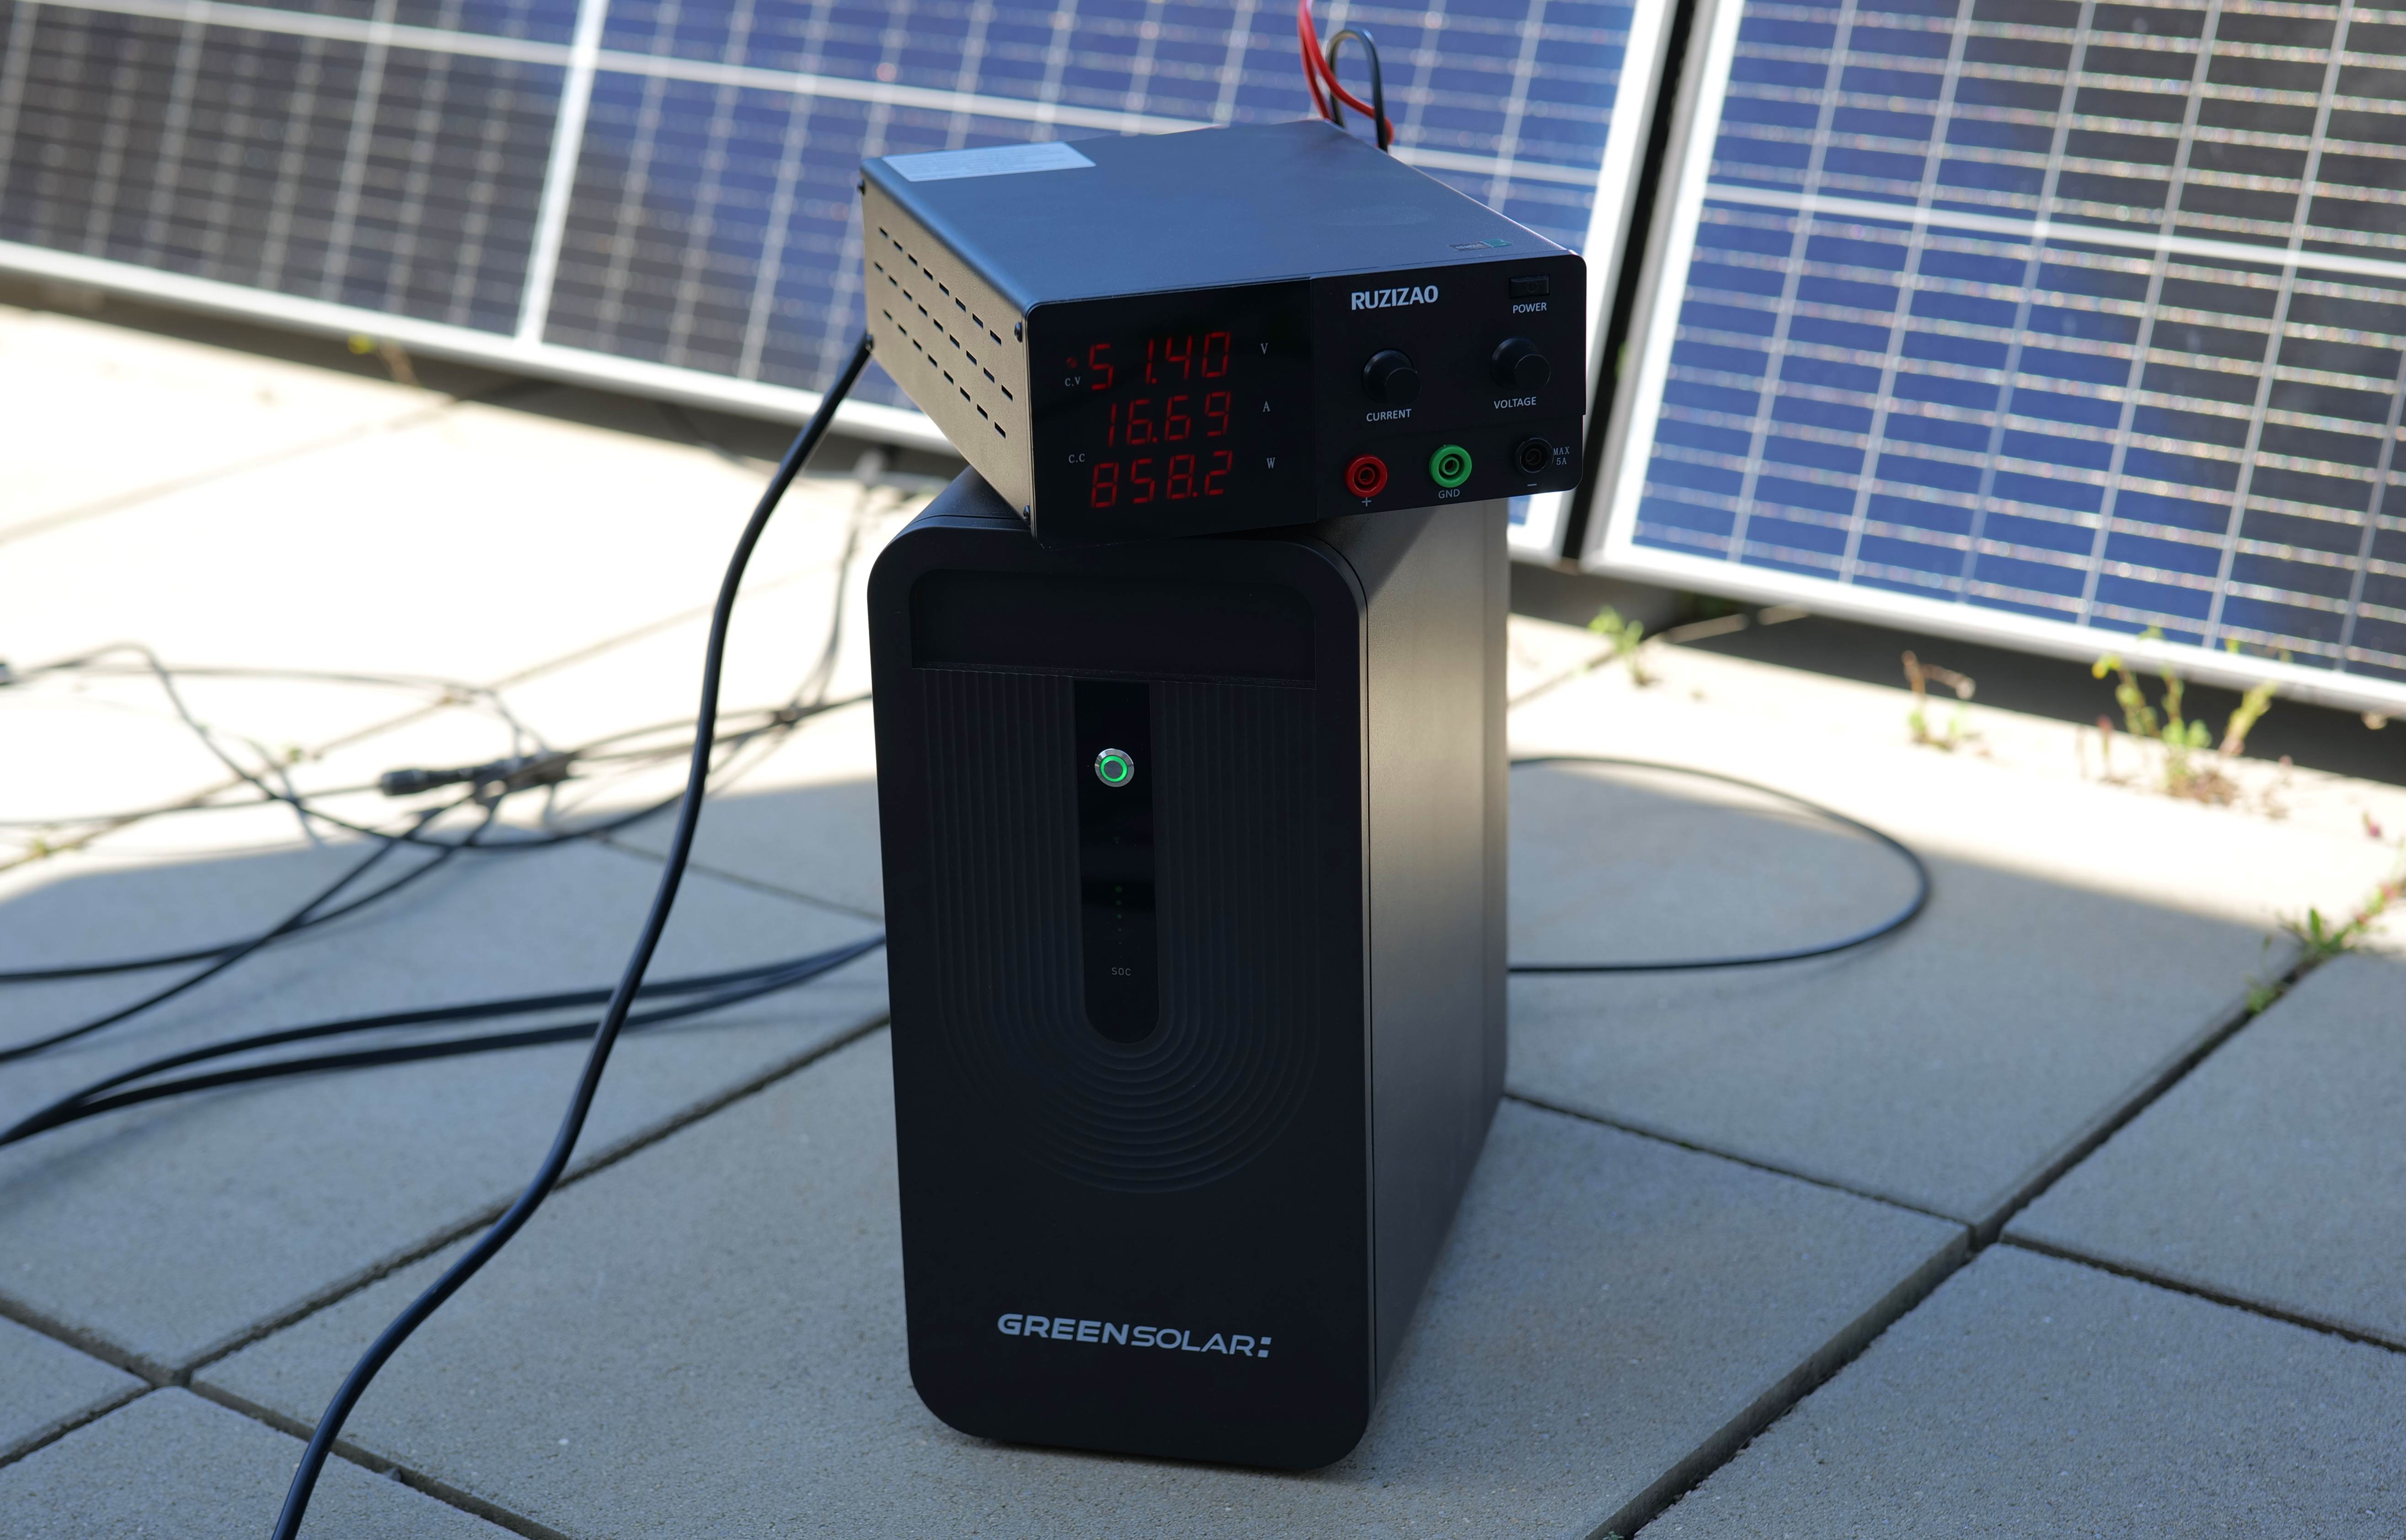 Test der Leistung am Labornetzteil: Simulation der Solarmodule mit Gleichstrom